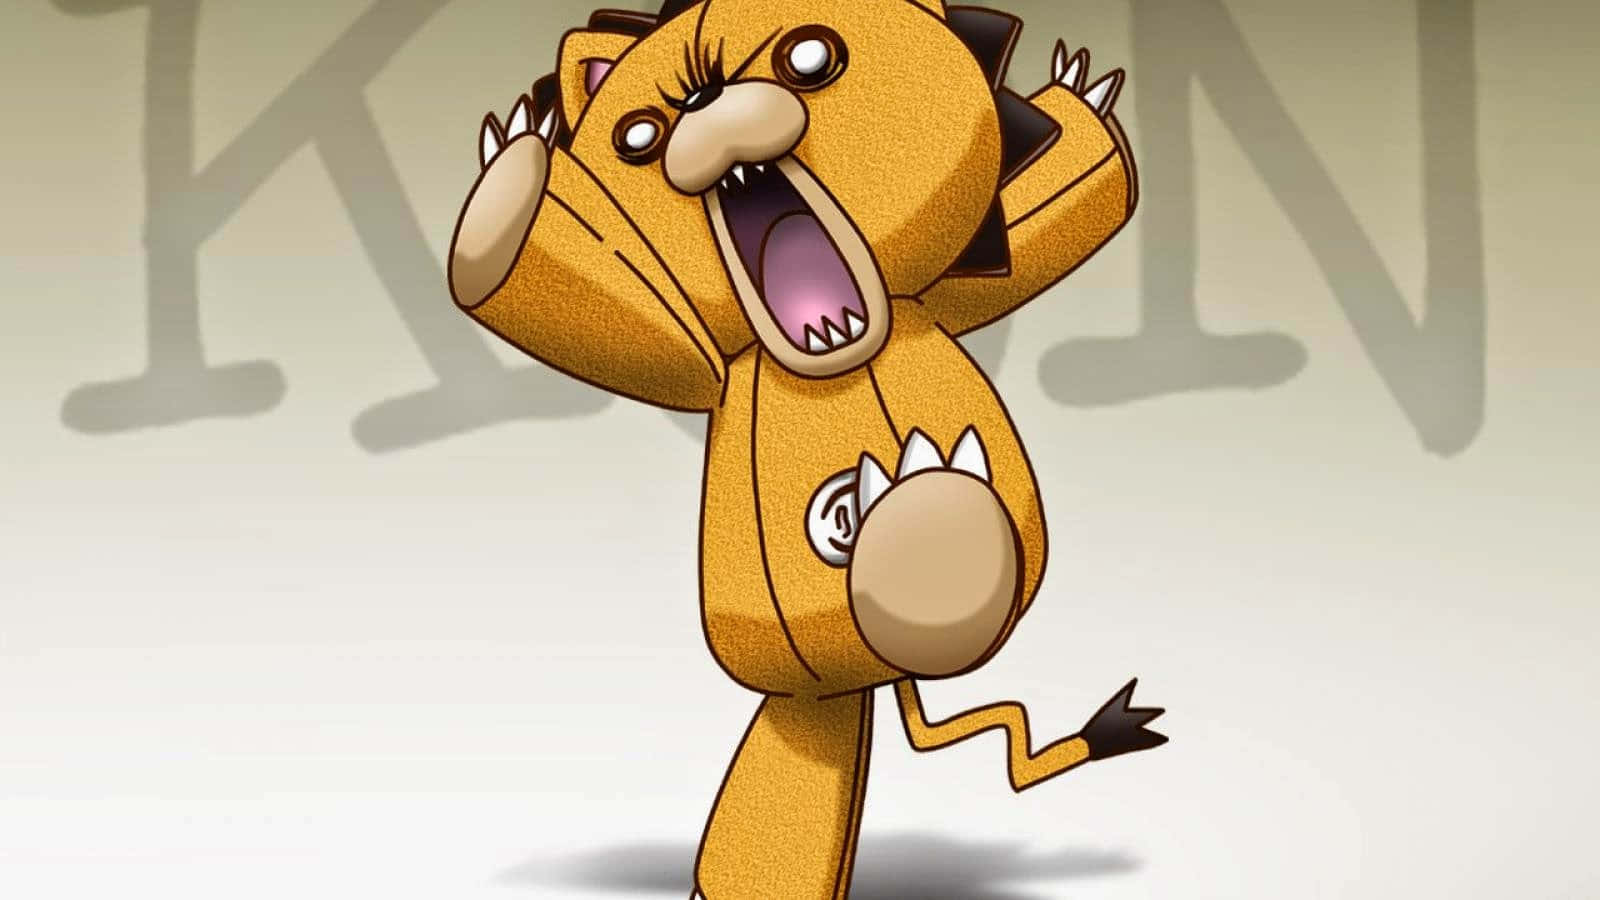 Bleach Kon - The Adorable Plush Lion Mascot Wallpaper